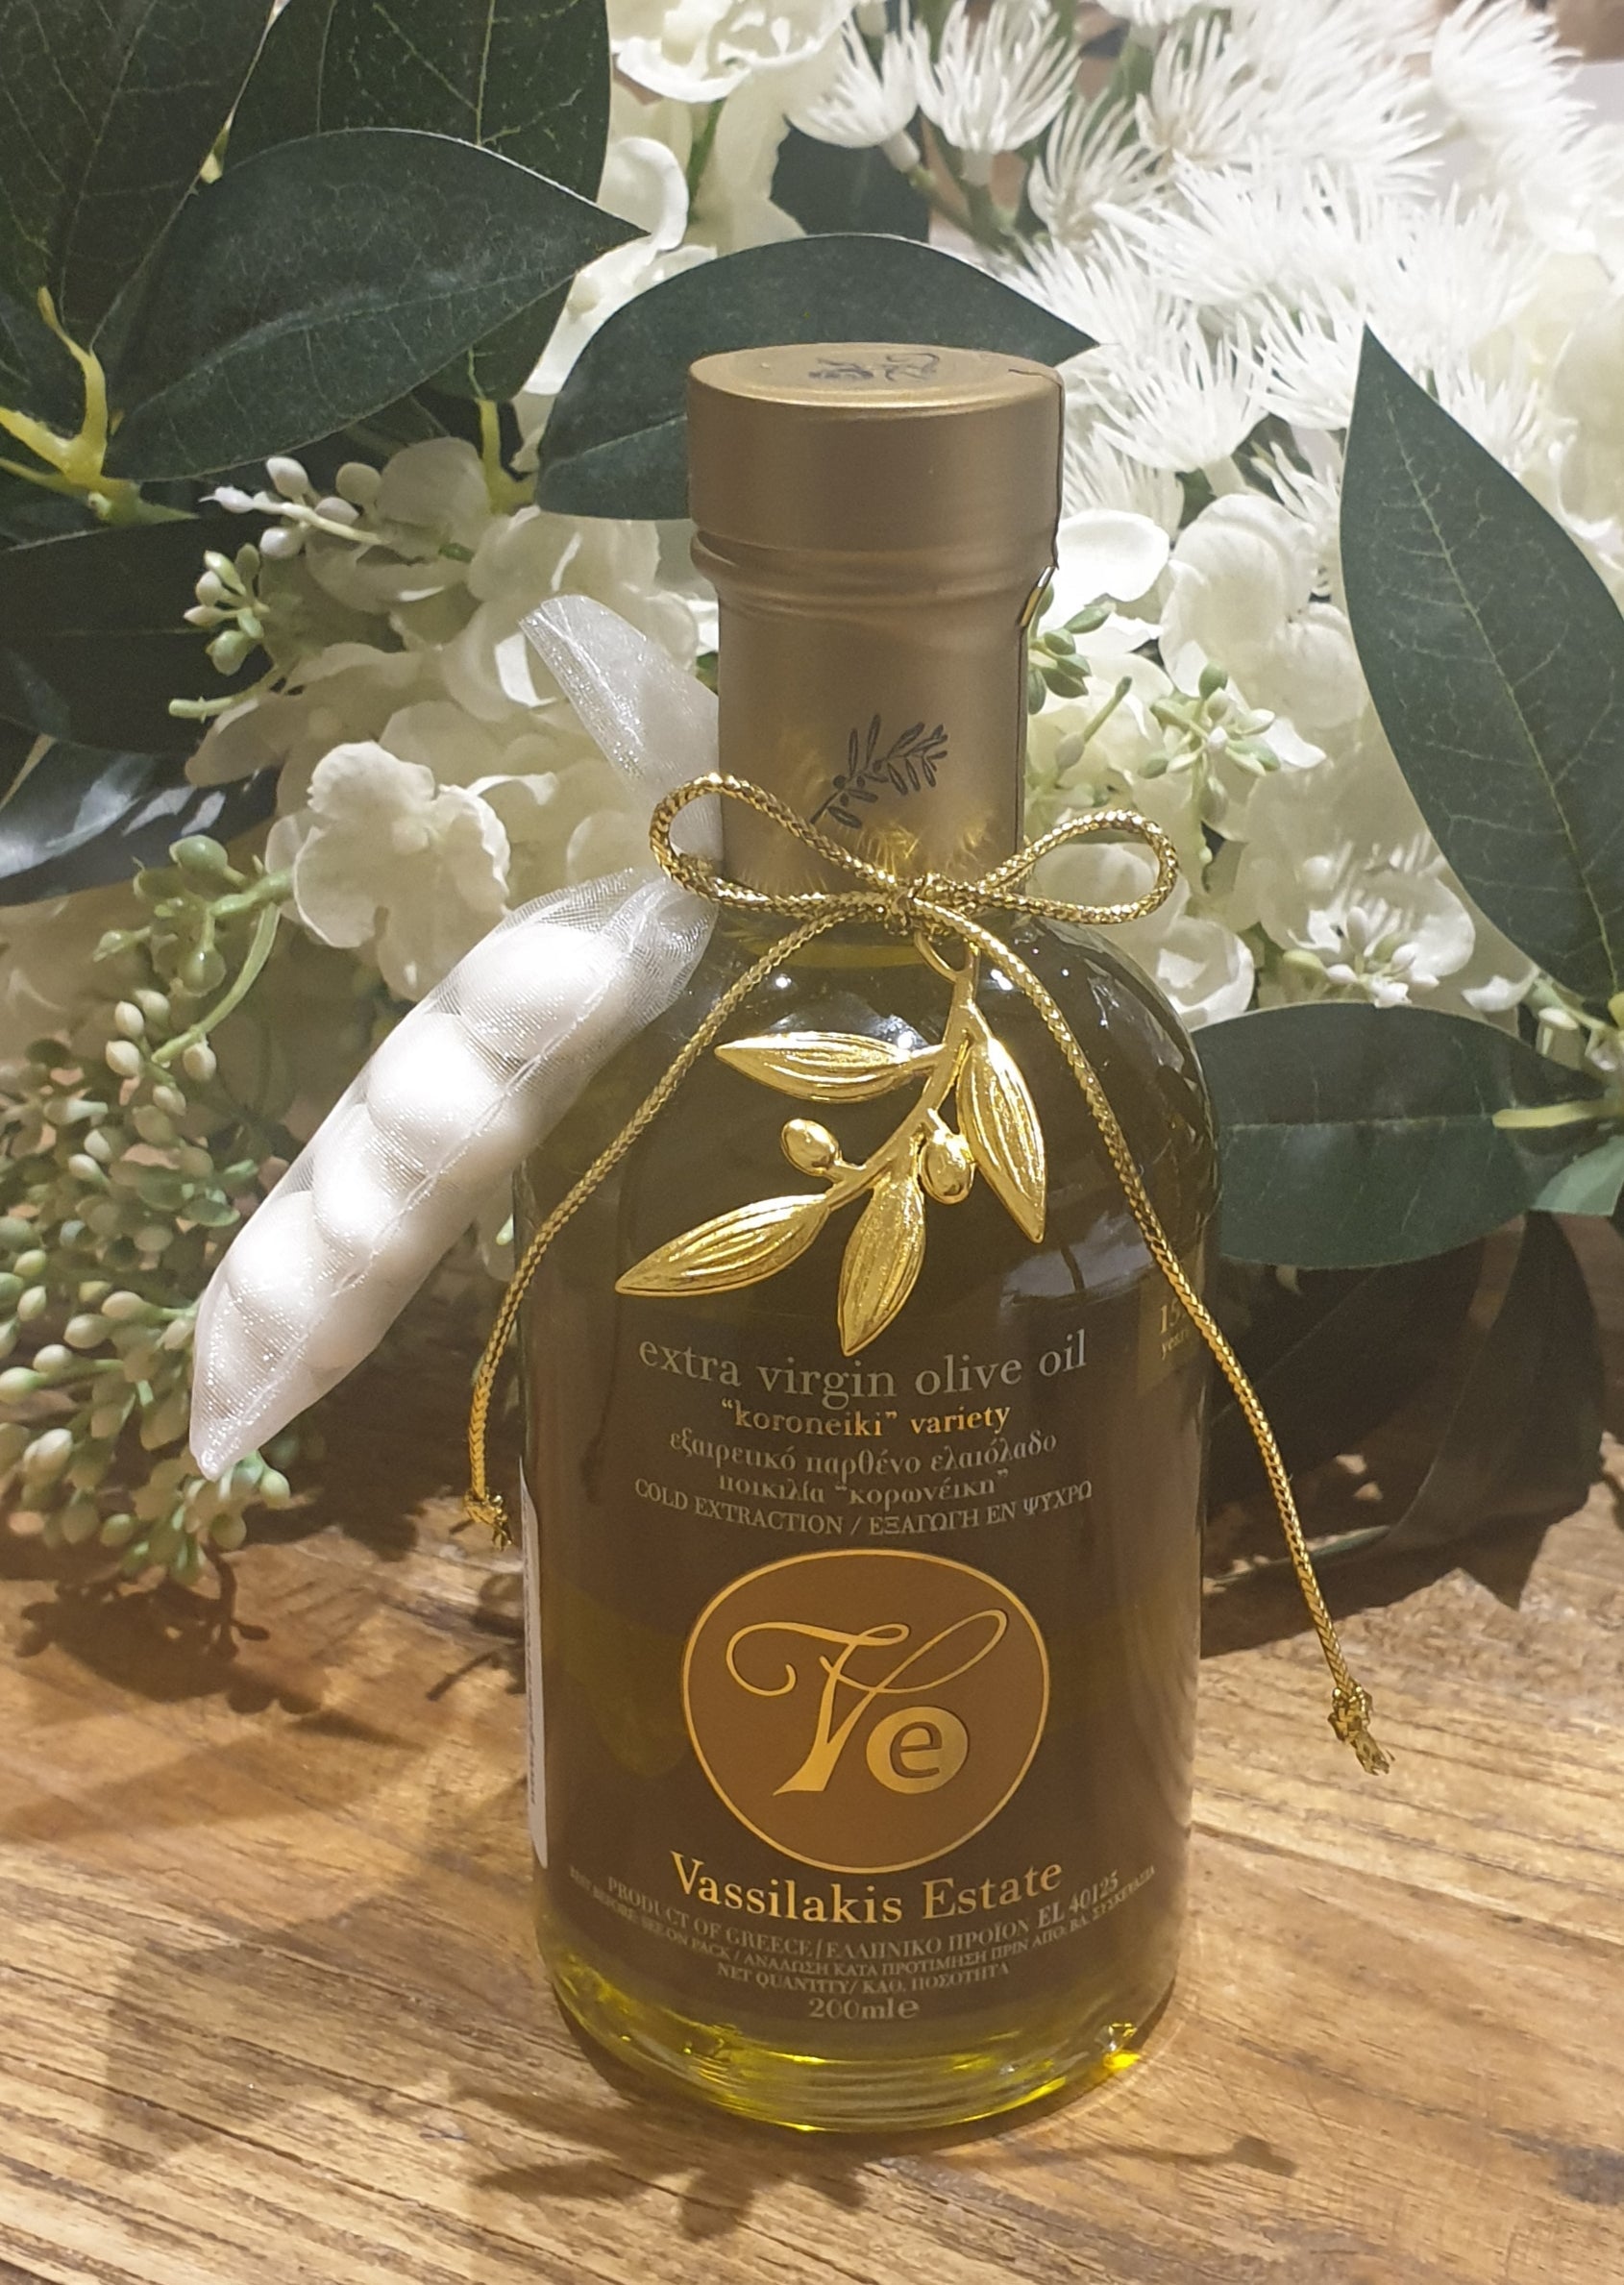 Bomboniere - Cretan Olive Oil - SOLD OUT | Pandora Designs Melbourne